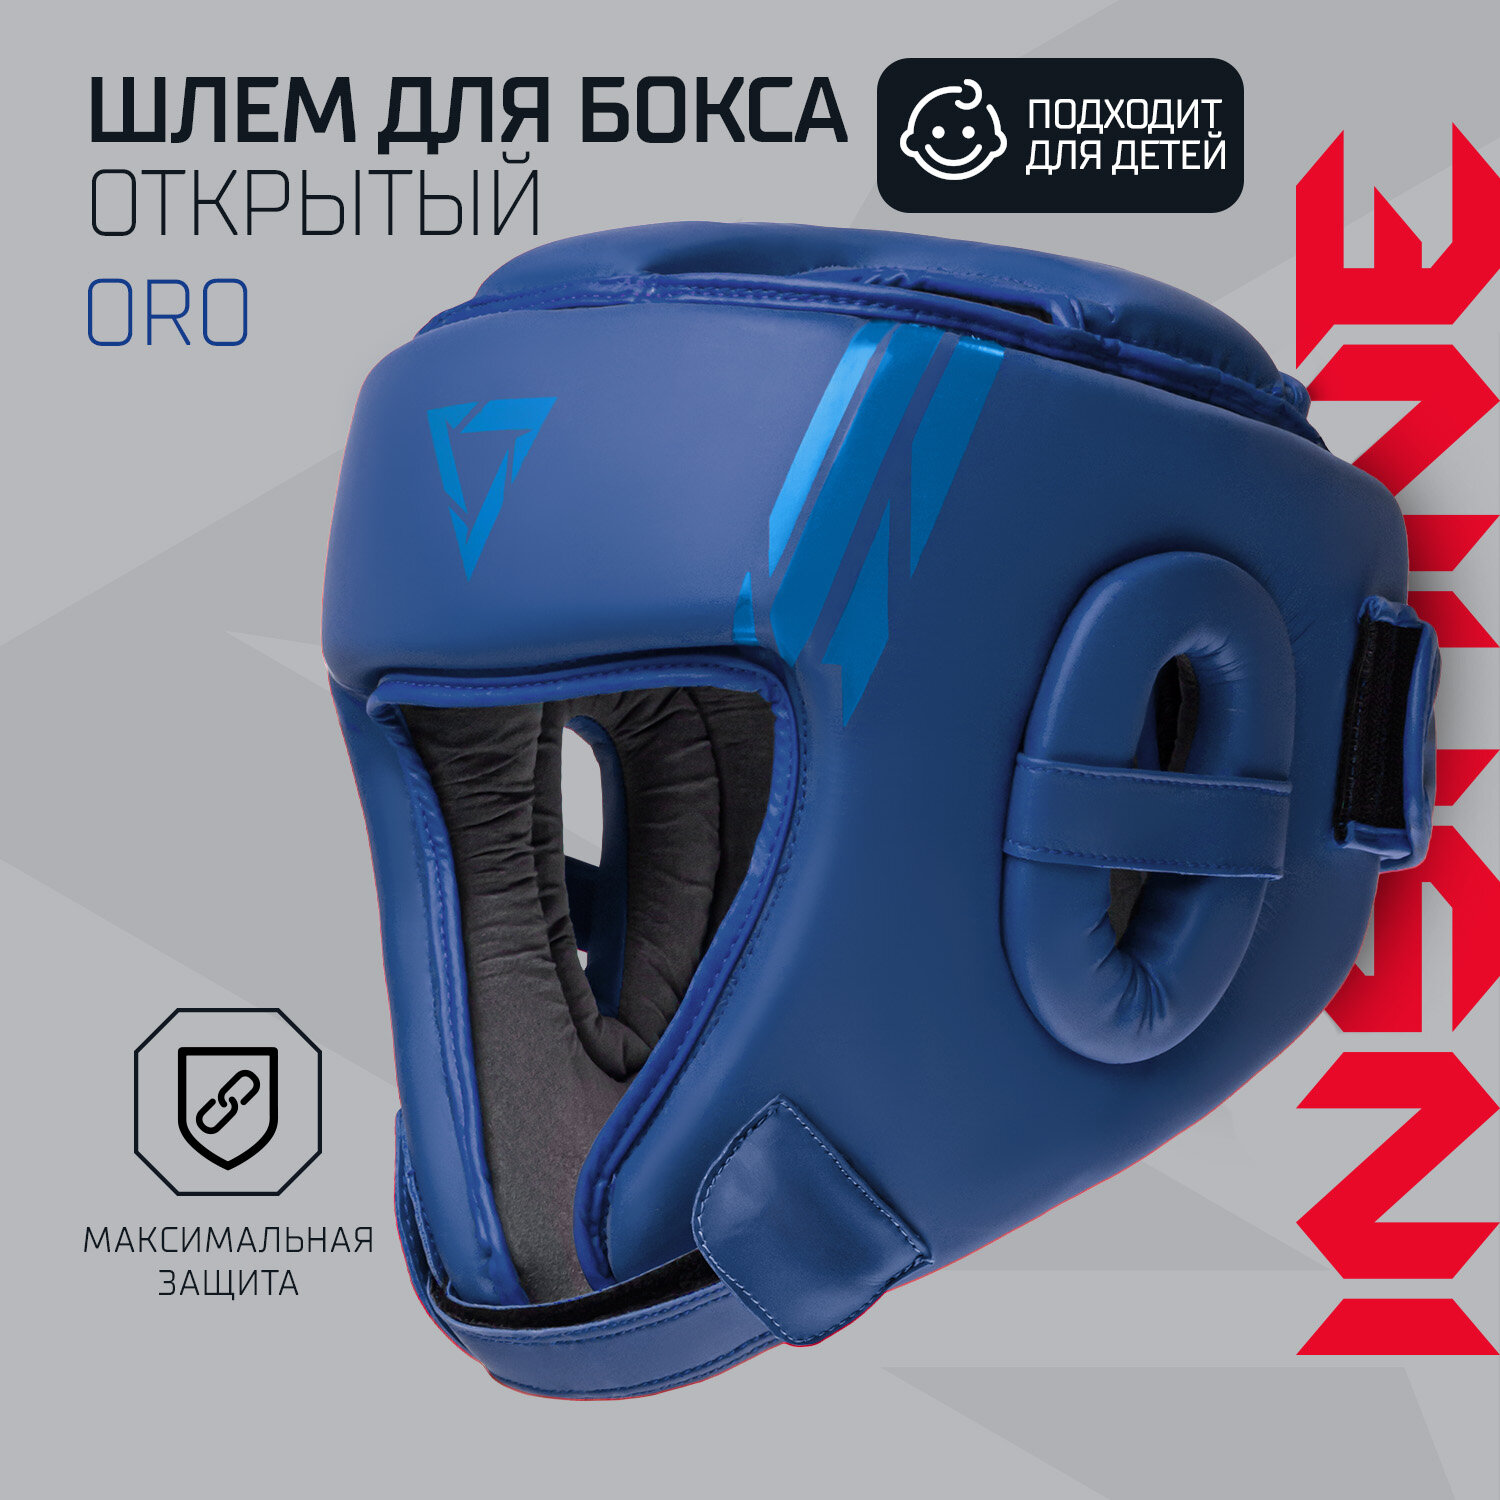 Шлем открытый INSANE ORO IN23-HG300, ПУ, синий, размер M